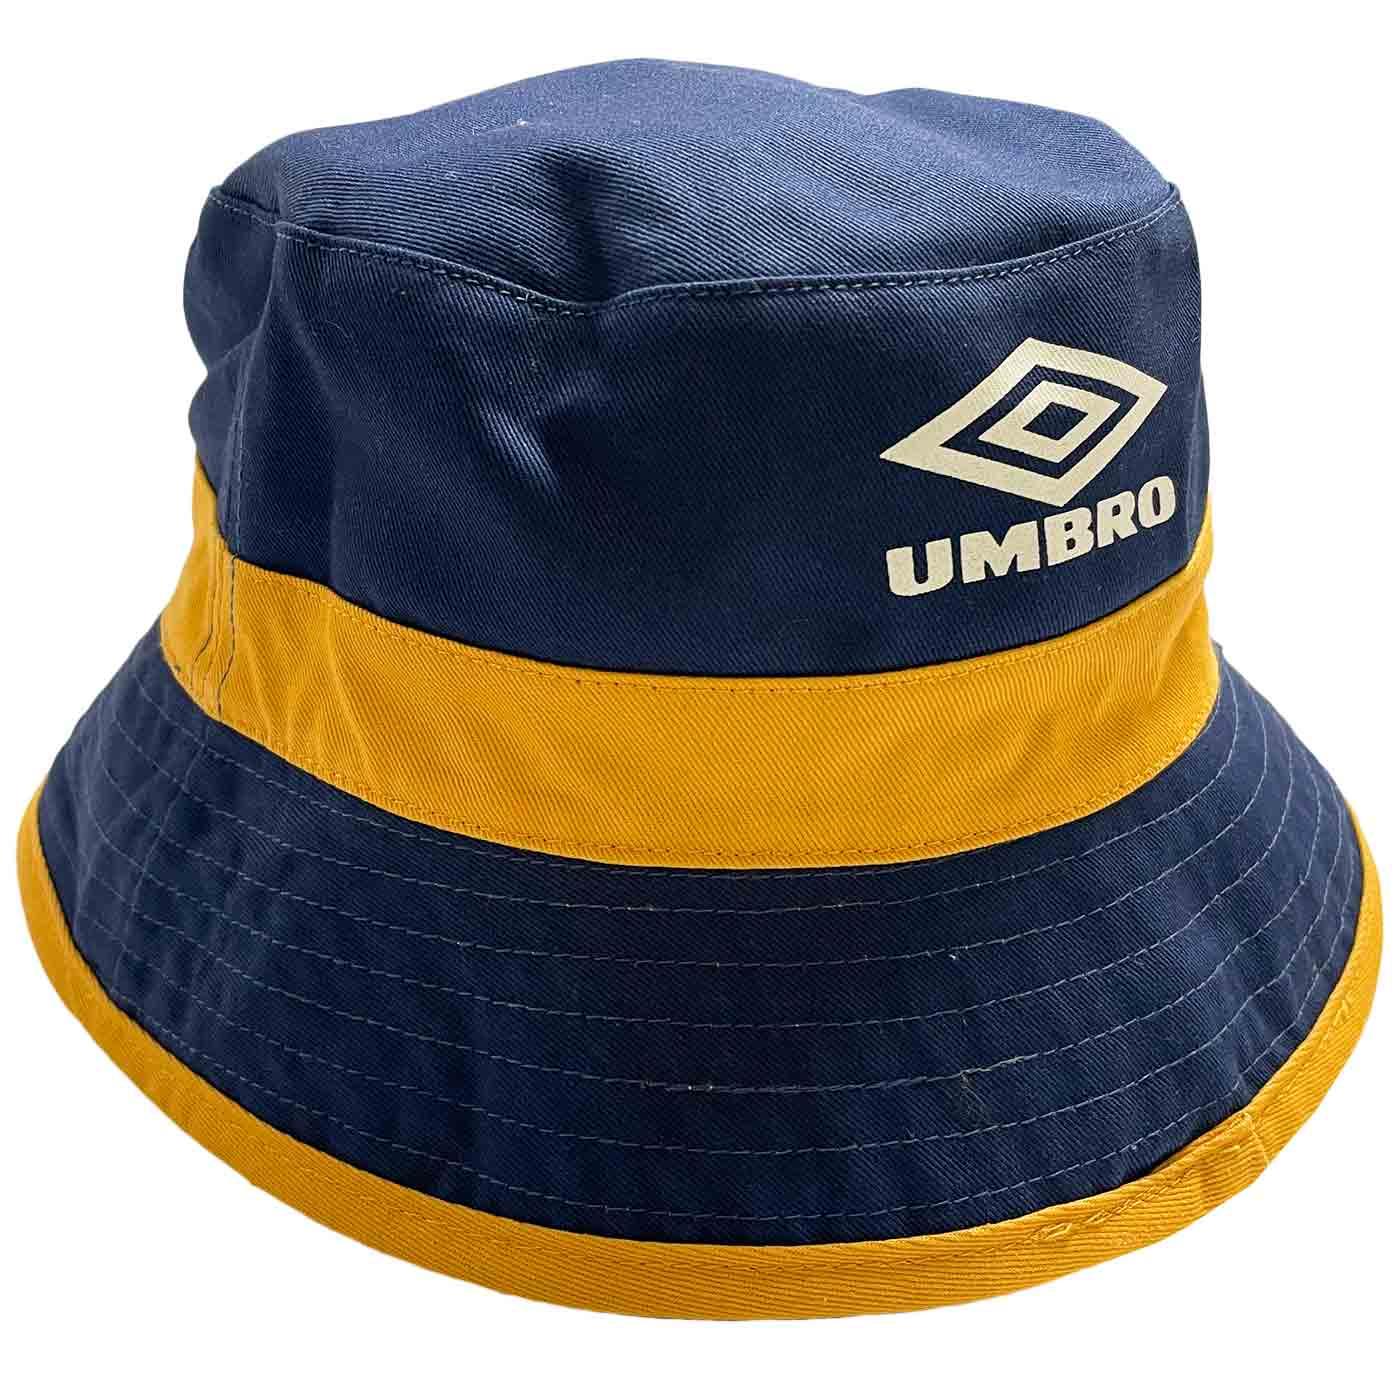 UMBRO x GIO Goi Retro 90s Reversible Bucket Hat